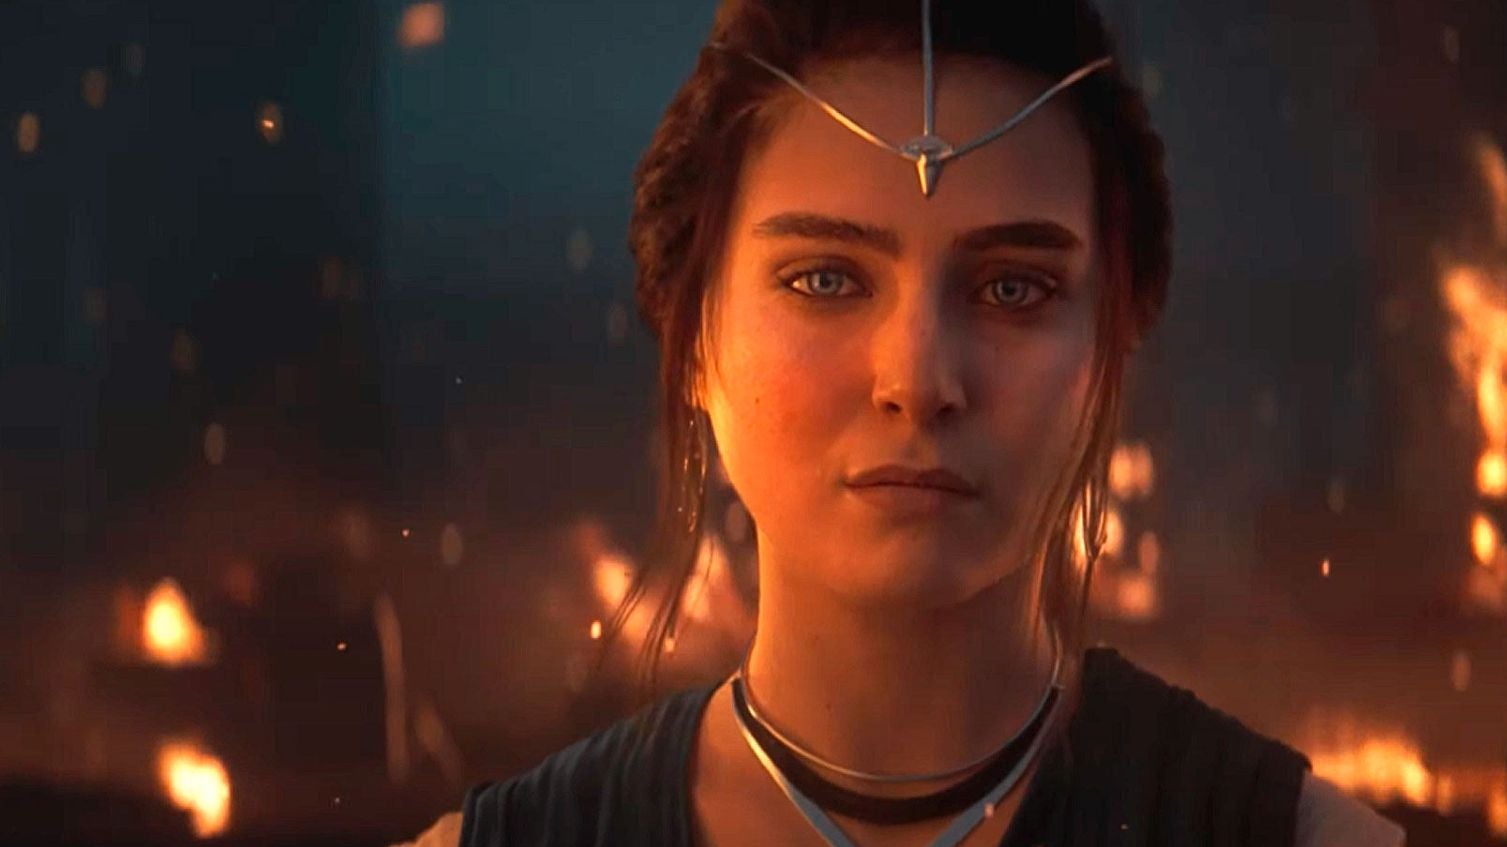 Bilder zu Star Wars Eclipse könnte sich The Last of Us zum Vorbild für Story und Gameplay nehmen